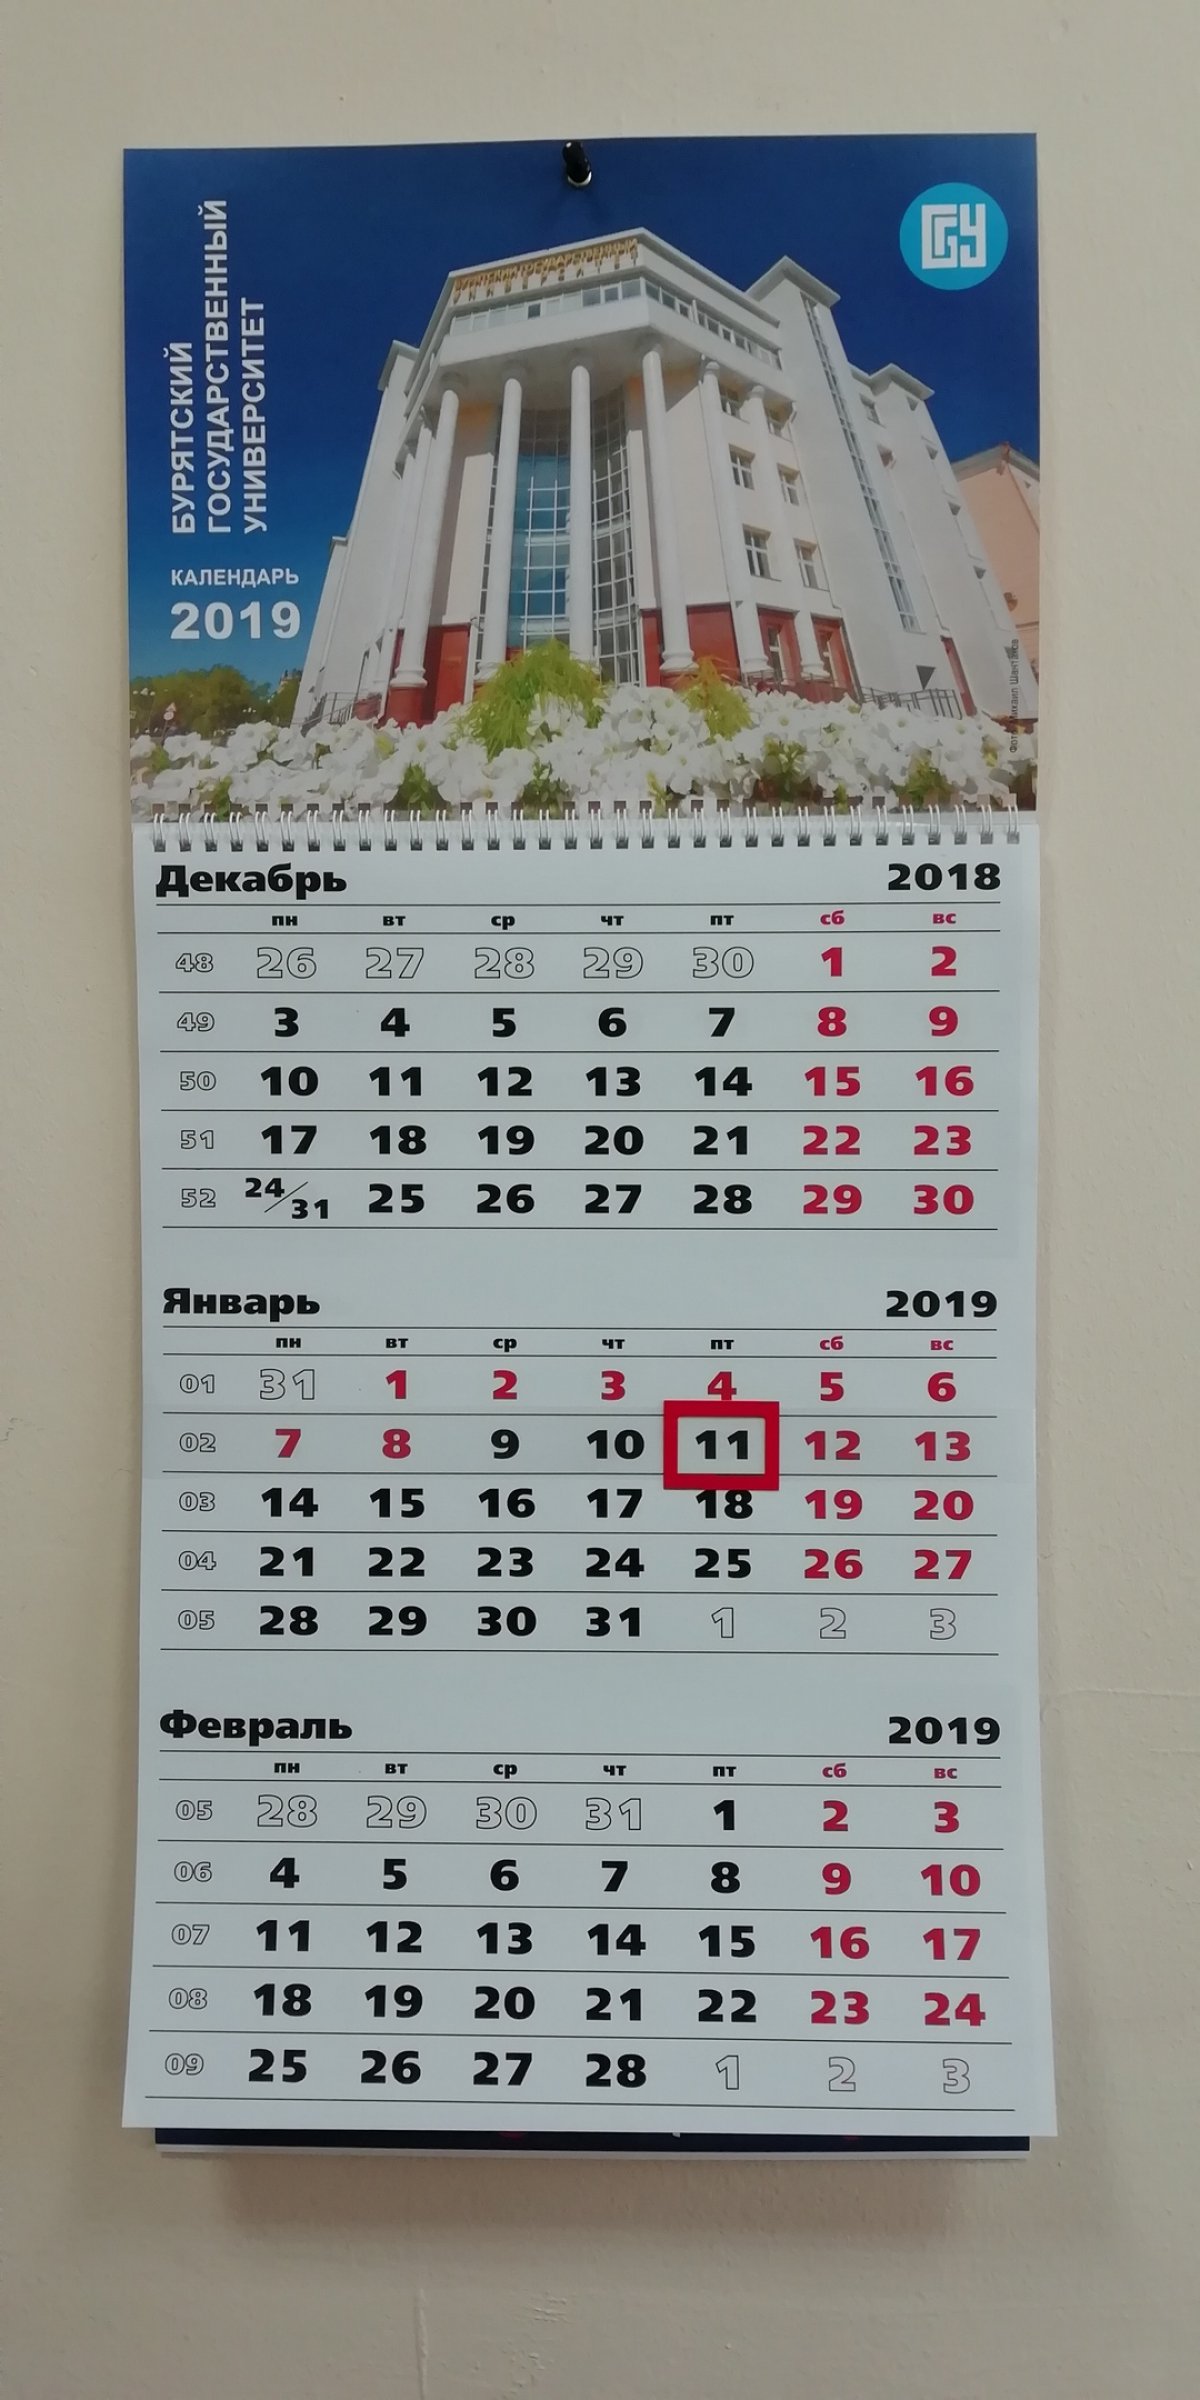 Календарь БГУ на 2019 год